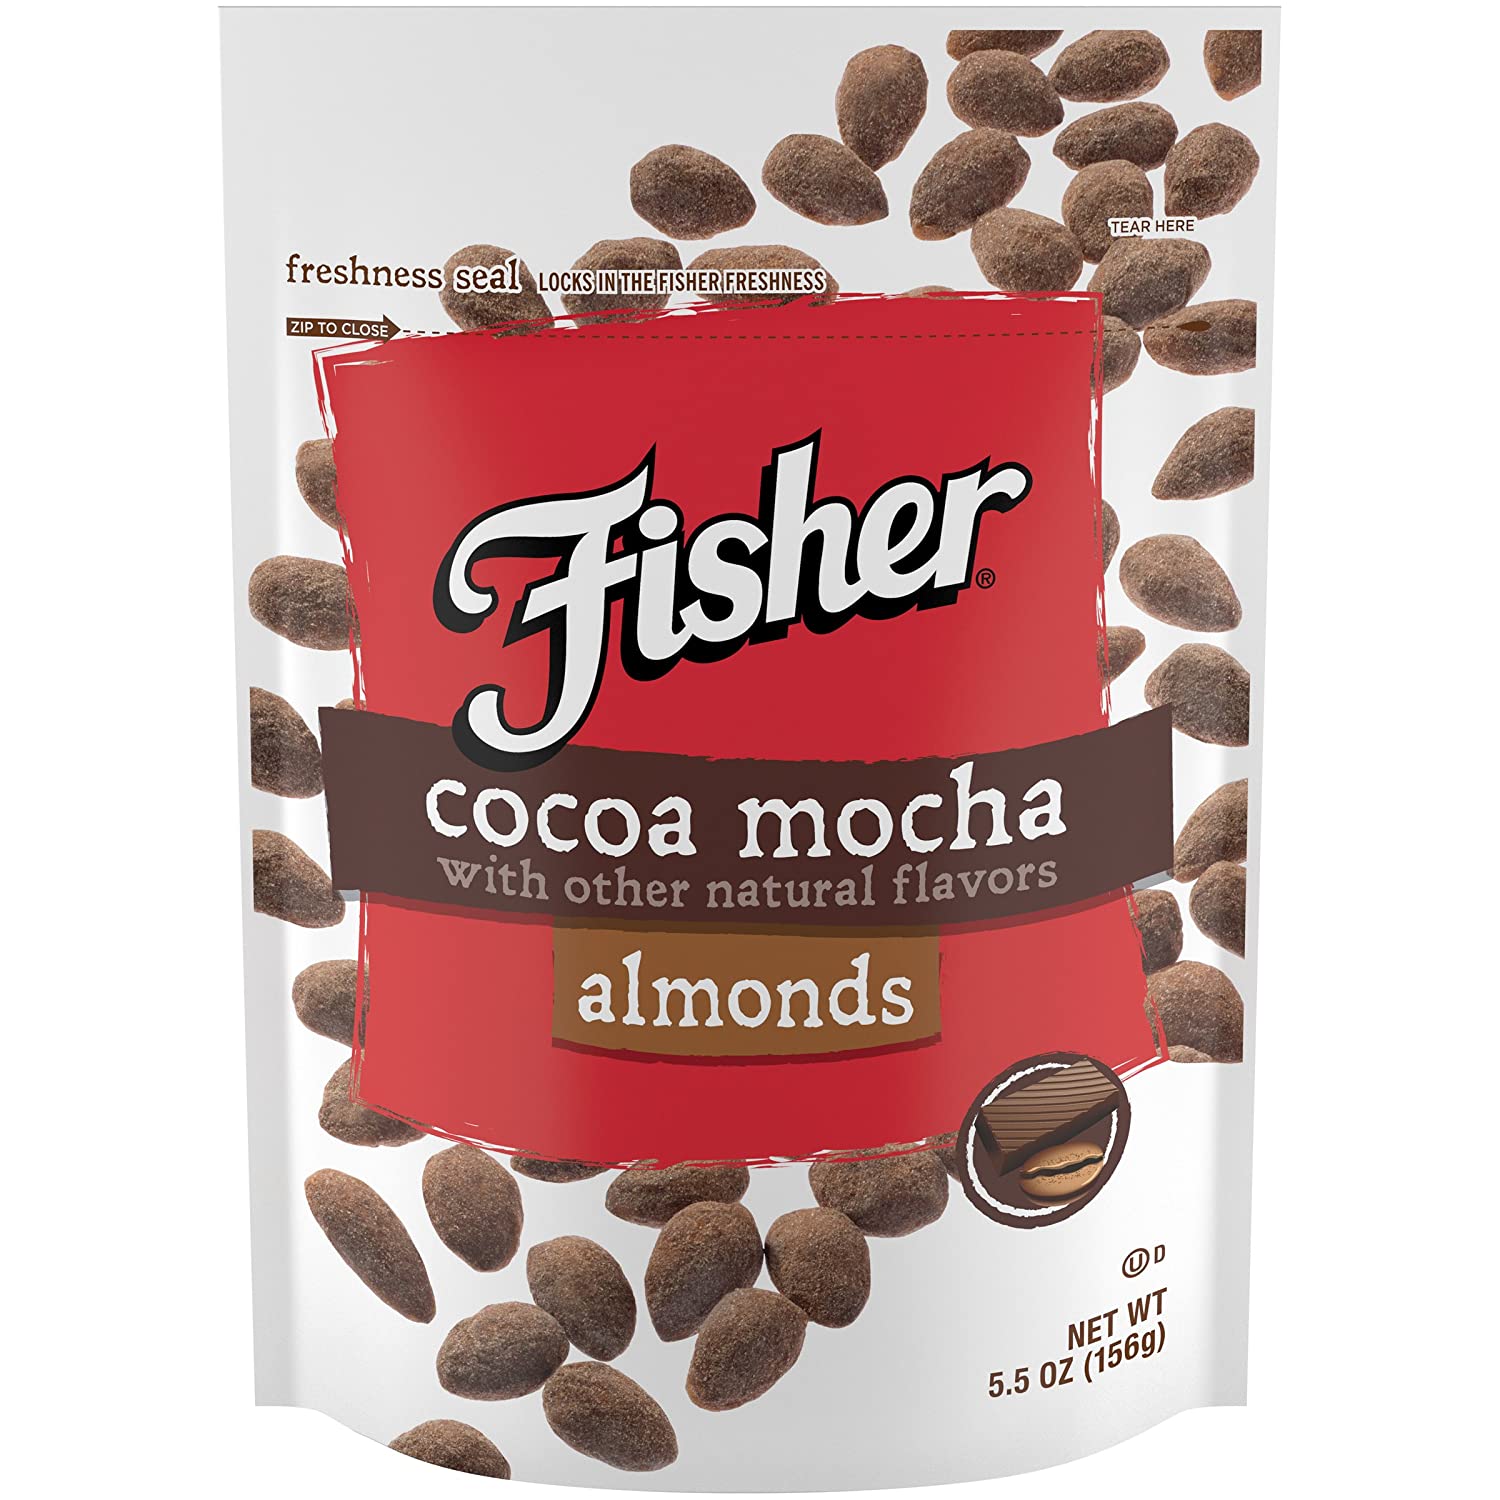 Fisher Cocoa Mocha Almonds, 5.5 oz